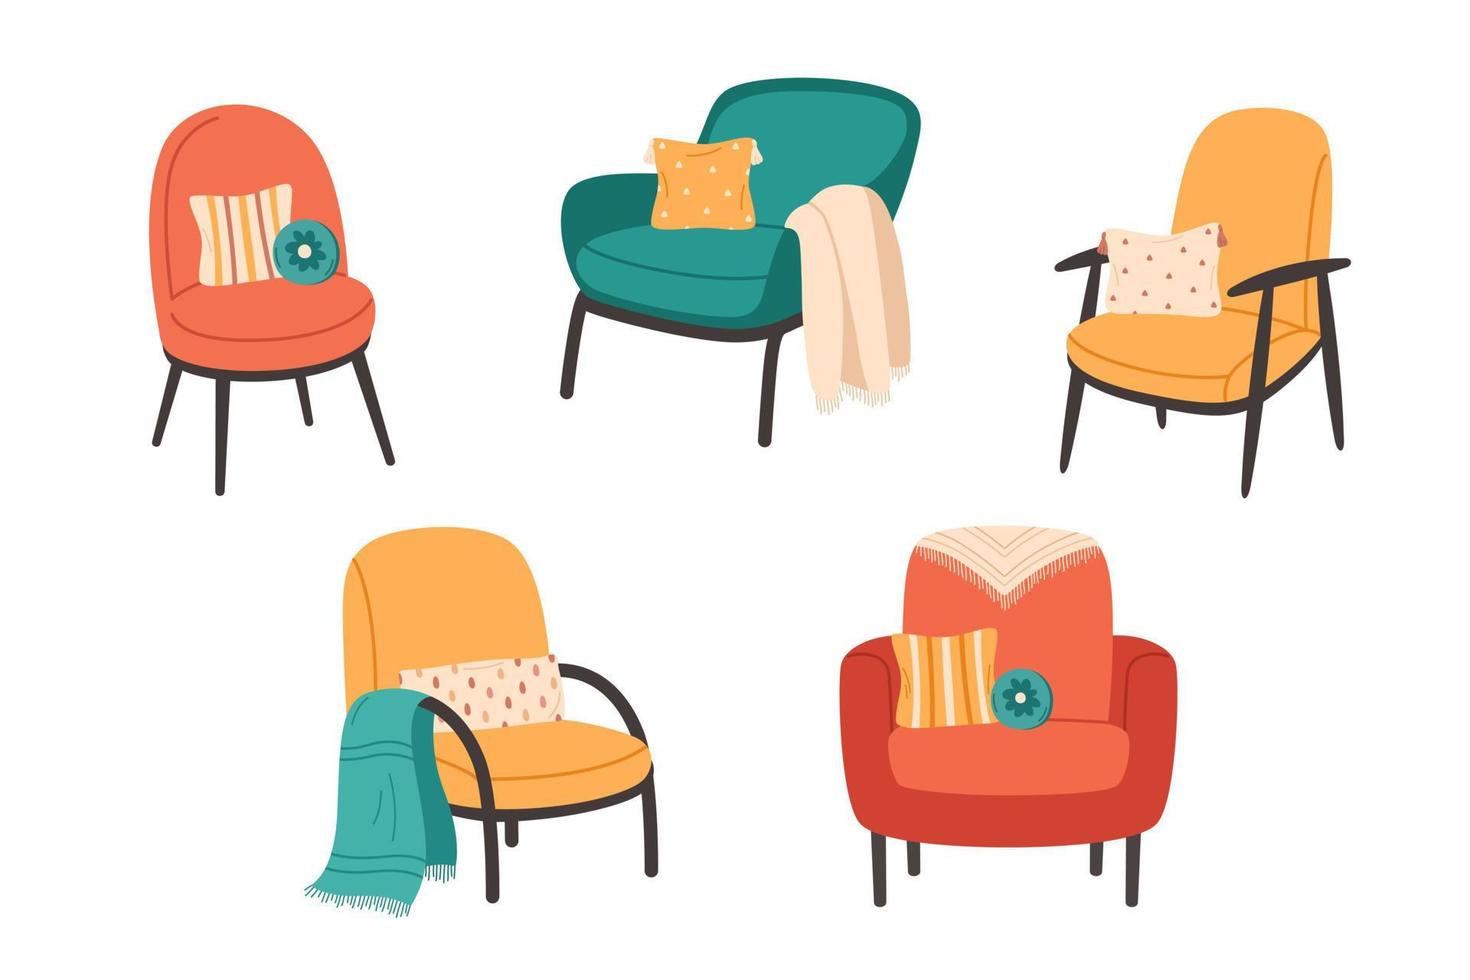 colección de sillones modernos con mantas y cojines decorativos. muebles cómodos, modernos y acogedores en estilo hygge. vector